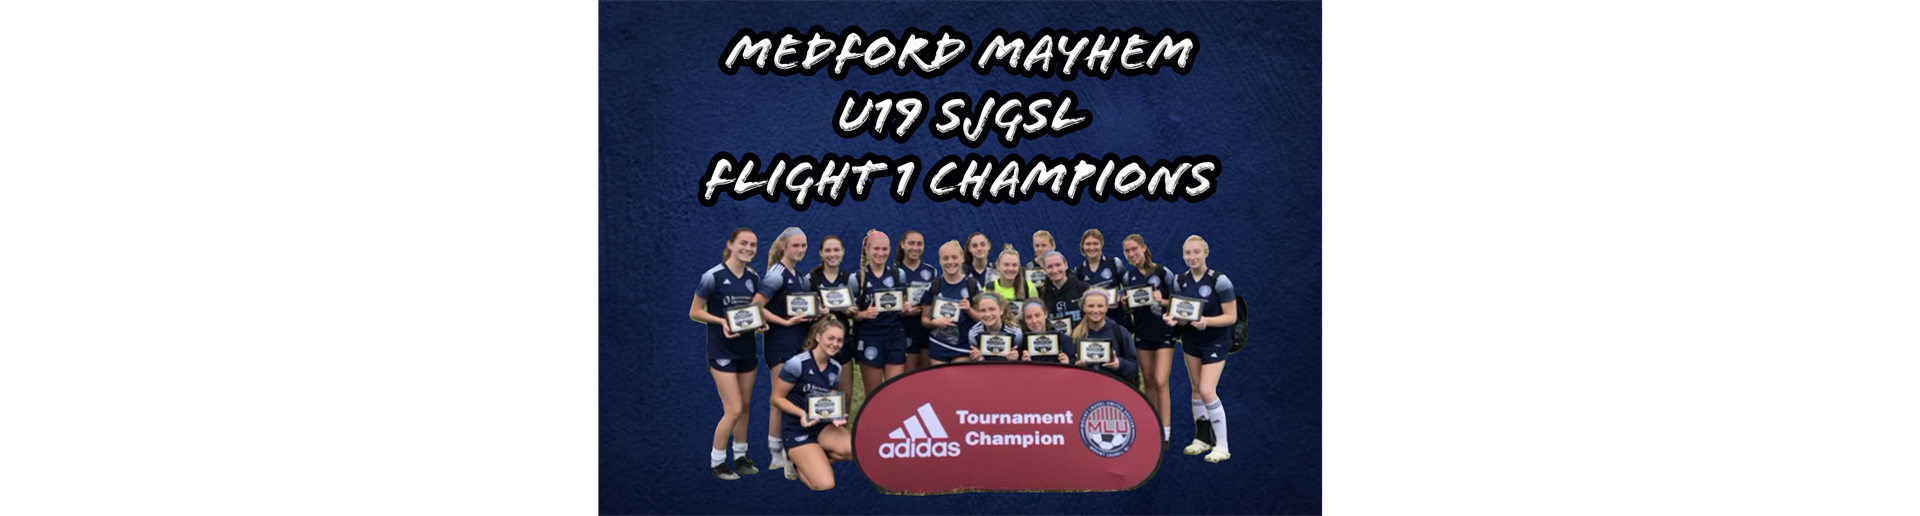 Medford Mayhem are U19 SJGSL Flight 1 Champs!